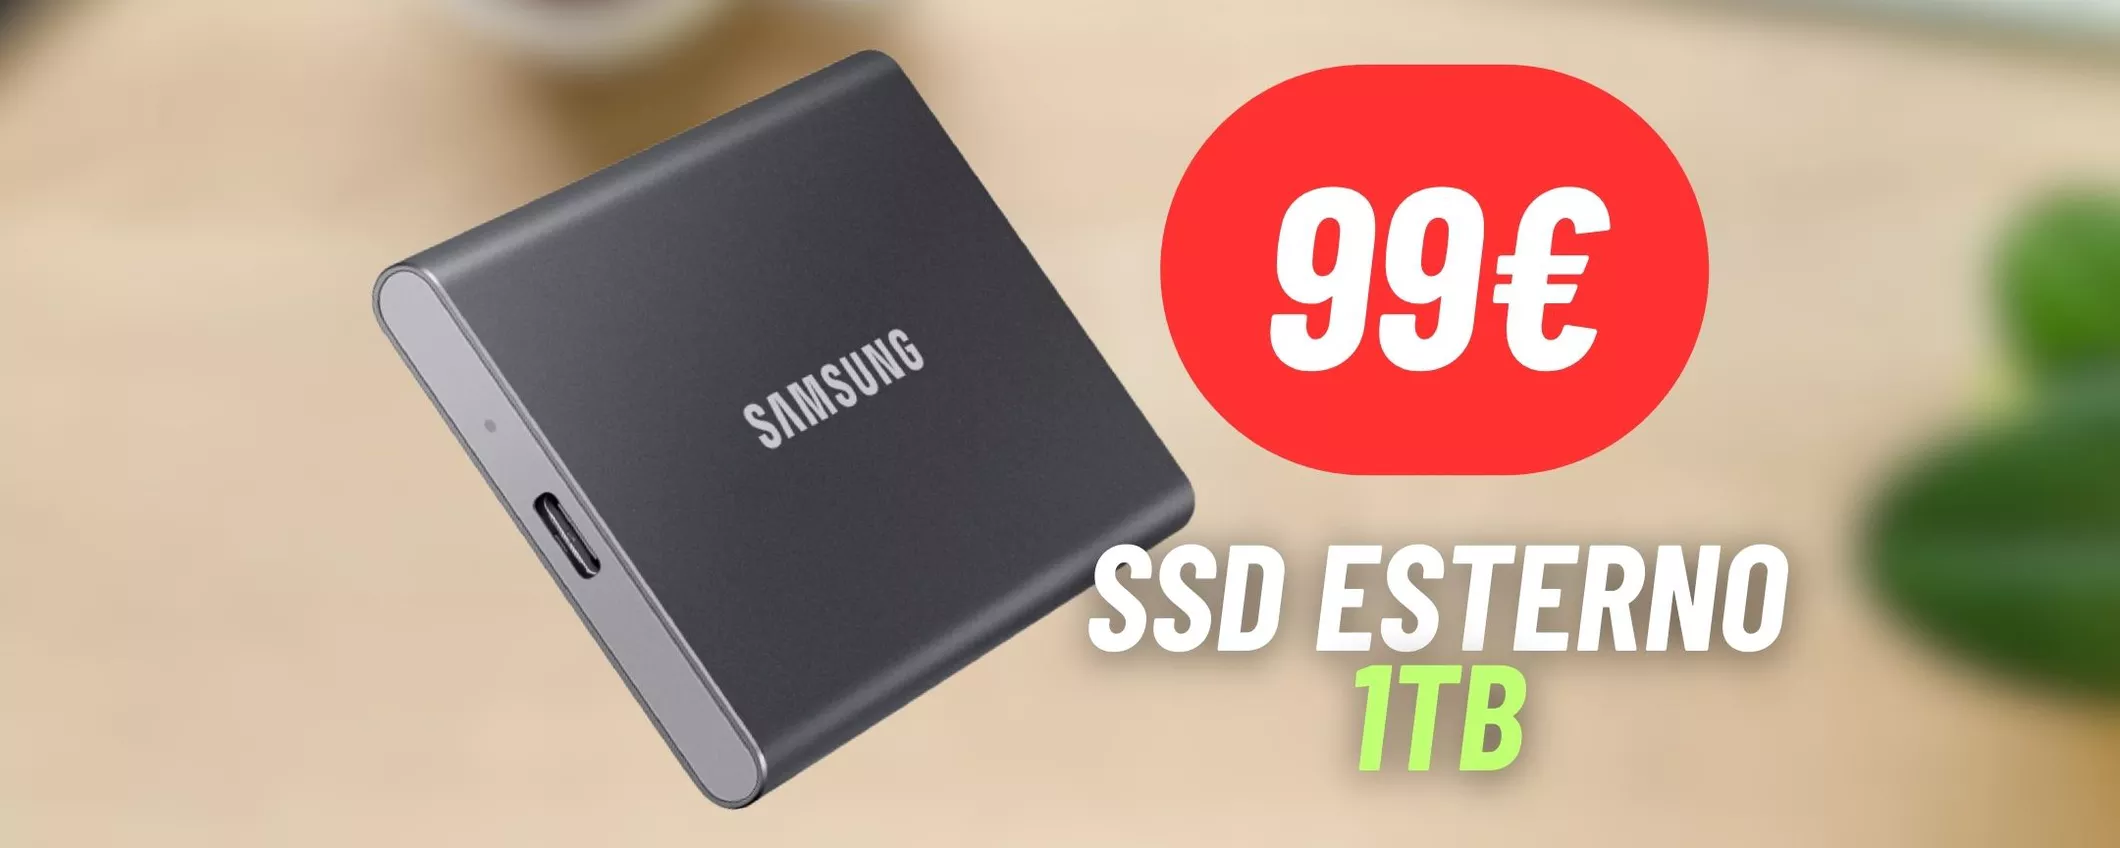 1TB di storage a soli 99€ con l'SSD Samsung esterno in promozione